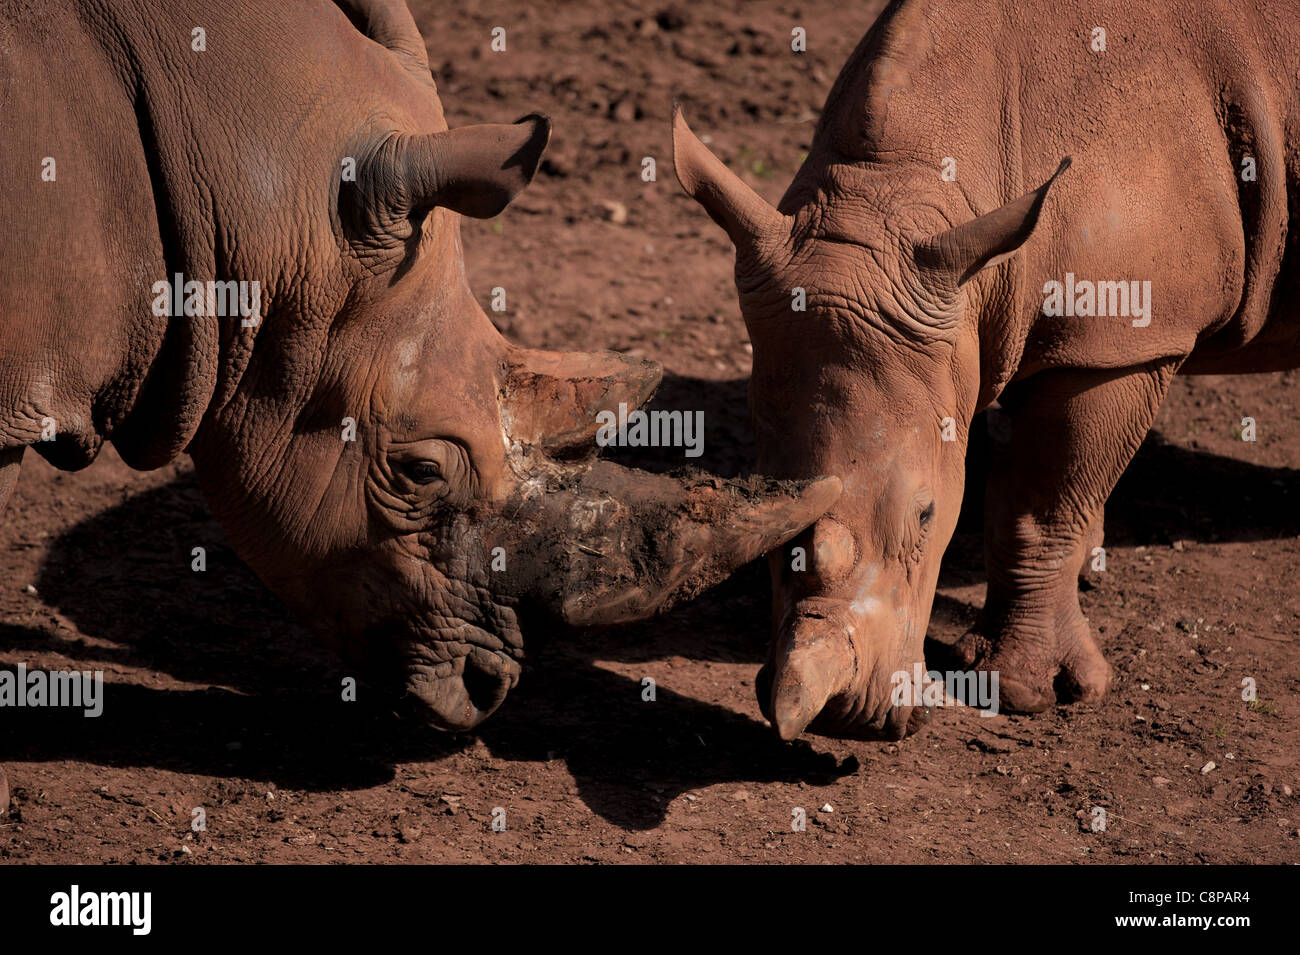 Un par de rinocerontes negros en cautiverio. Foto de stock